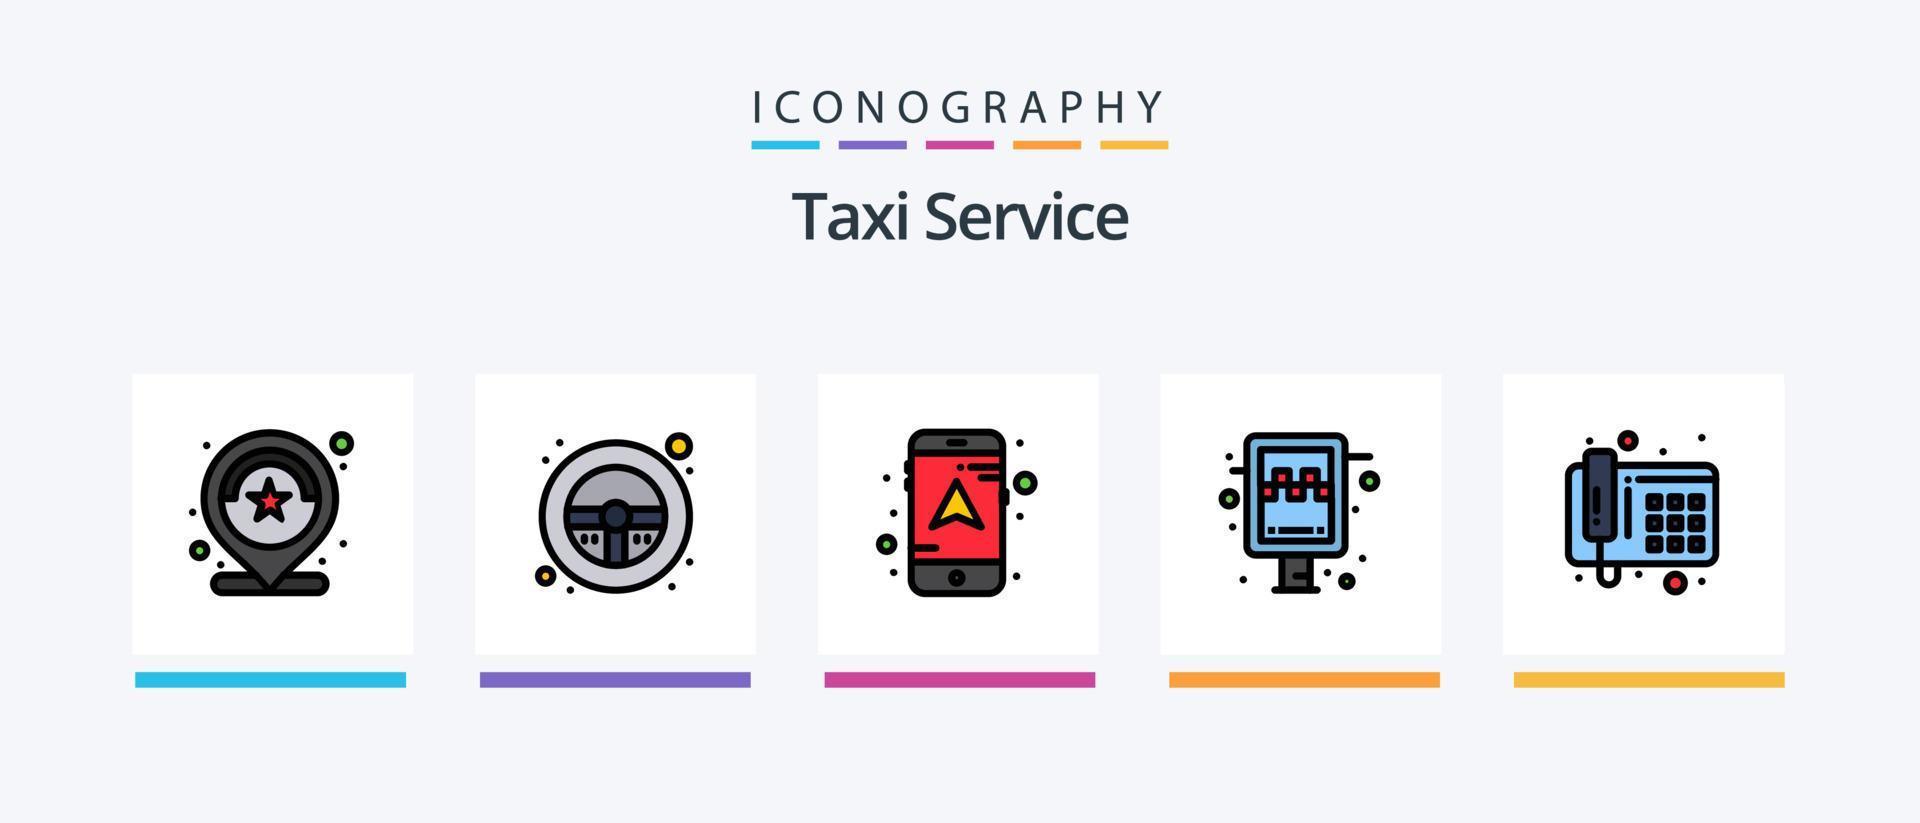 la línea de servicio de taxi llenó el paquete de 5 iconos, incluida la búsqueda. Taxi. cliente. buscar. persona. diseño de iconos creativos vector